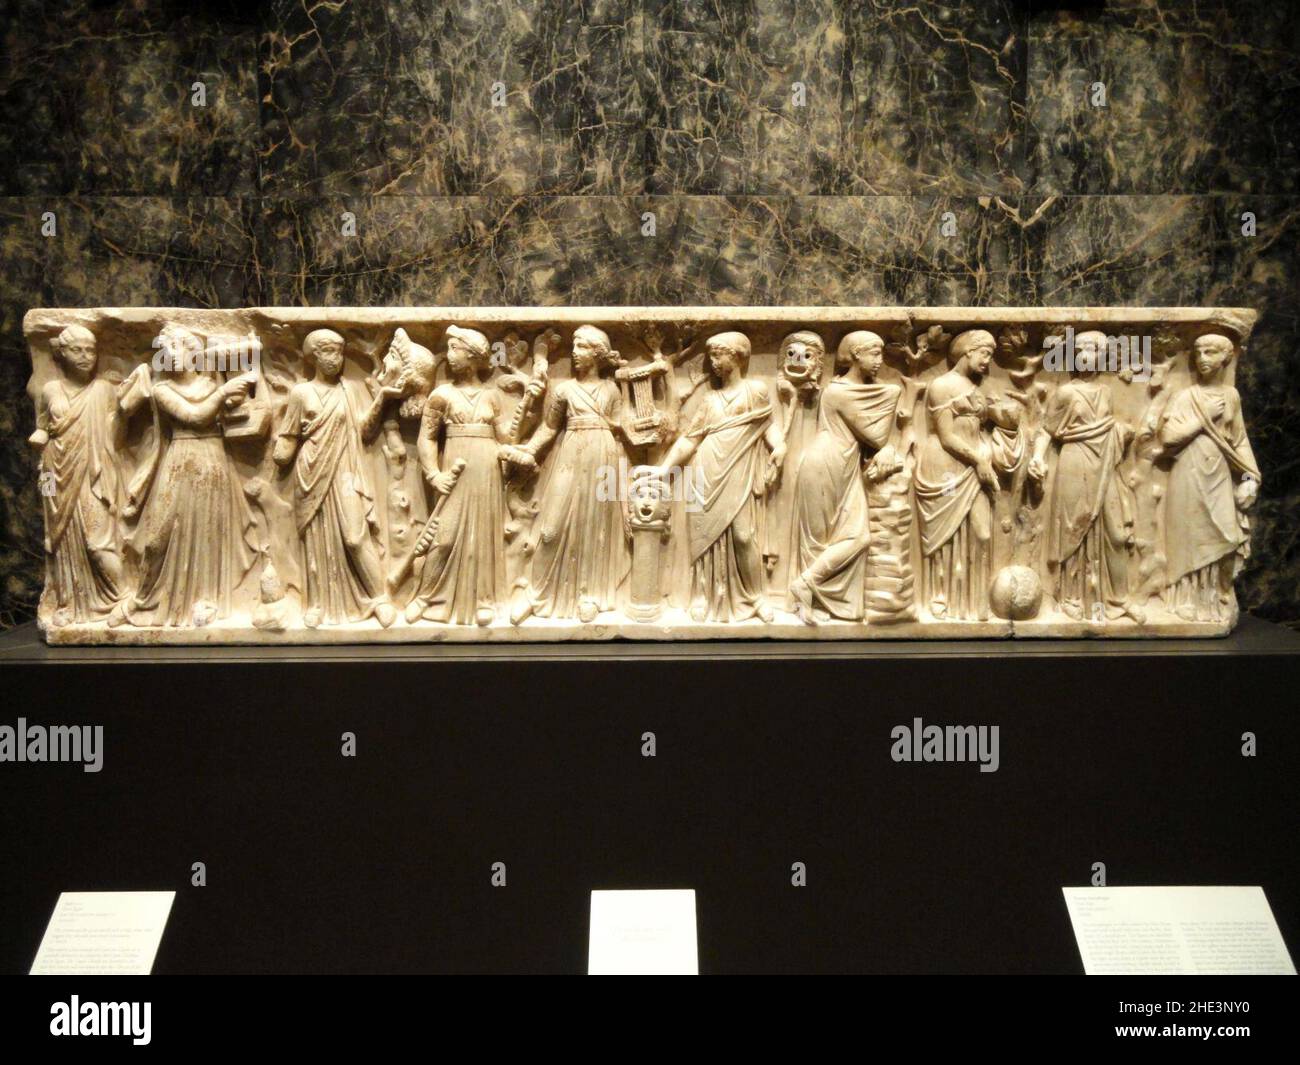 Roman sarcophagus, Italy, mid 2nd century CE Stock Photo